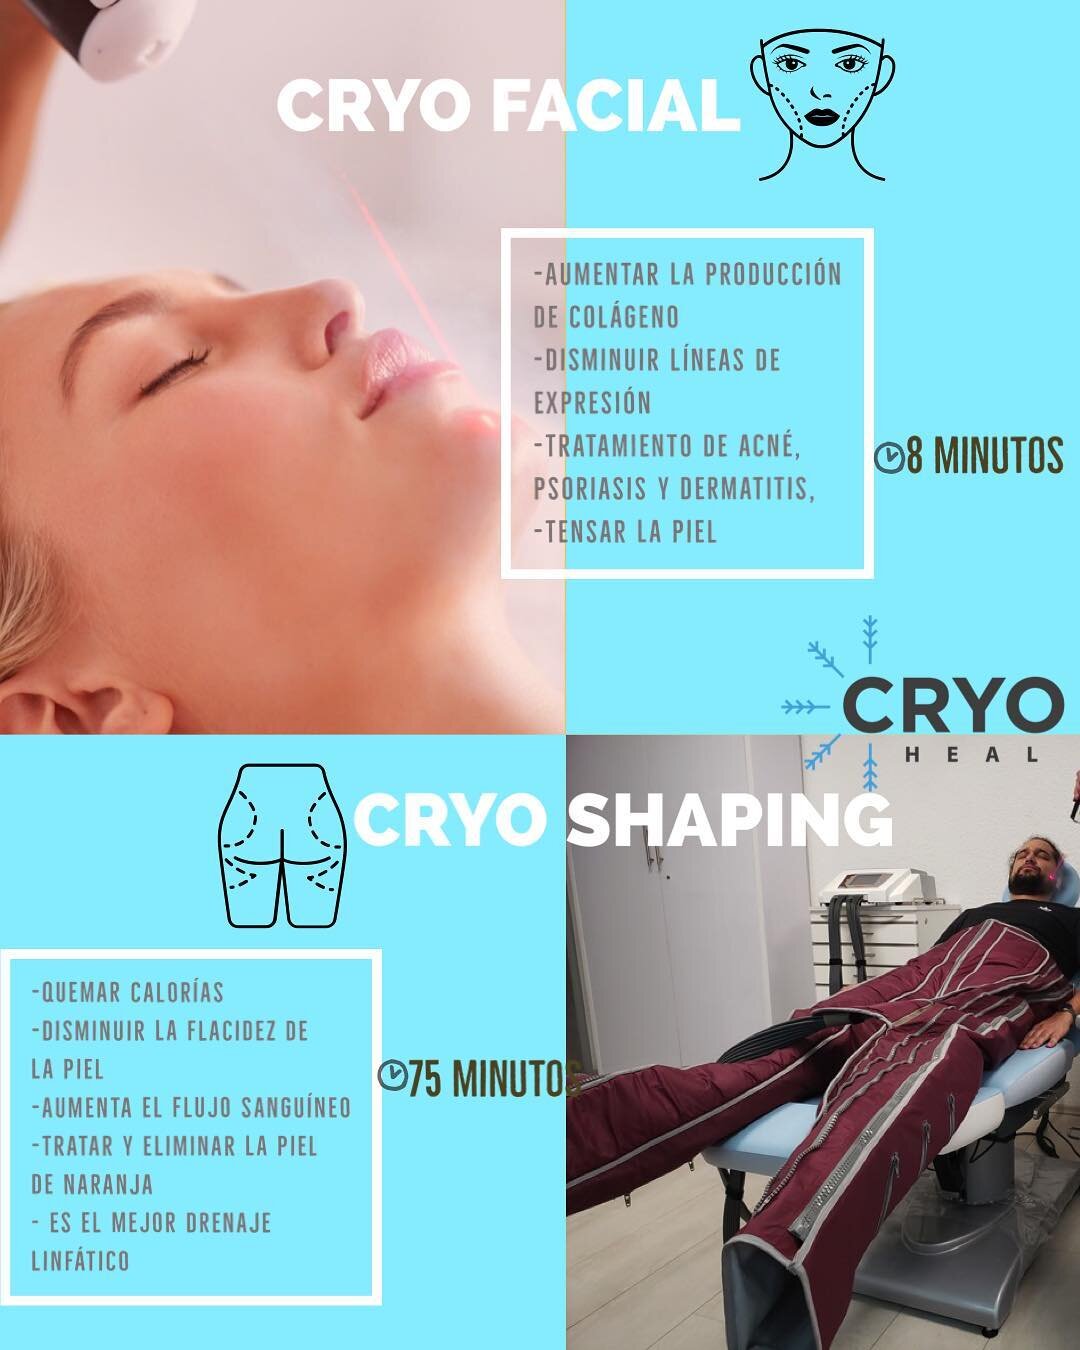 El Cryo Shaping es un tratamiento &uacute;nico en M&eacute;xico y en Cryo Heal estamos felices de ofrec&eacute;rtelo!!
Pregunta por info y aprovecha la PROMO que tenemos para ti!
Agenda tu cita! ❄️